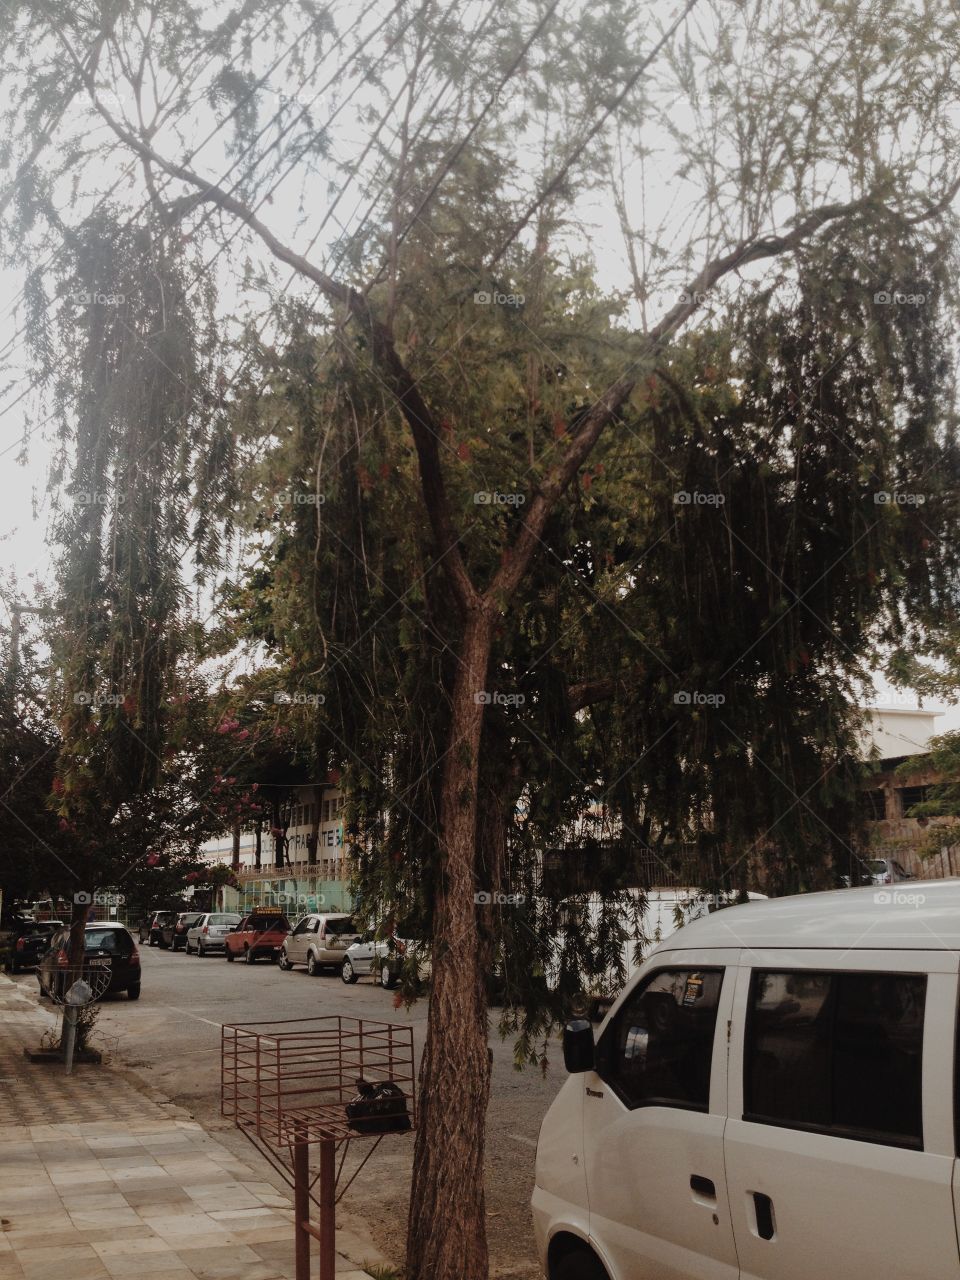 Quase não reparamos as árvores que sobrevivem ao caos da cidade